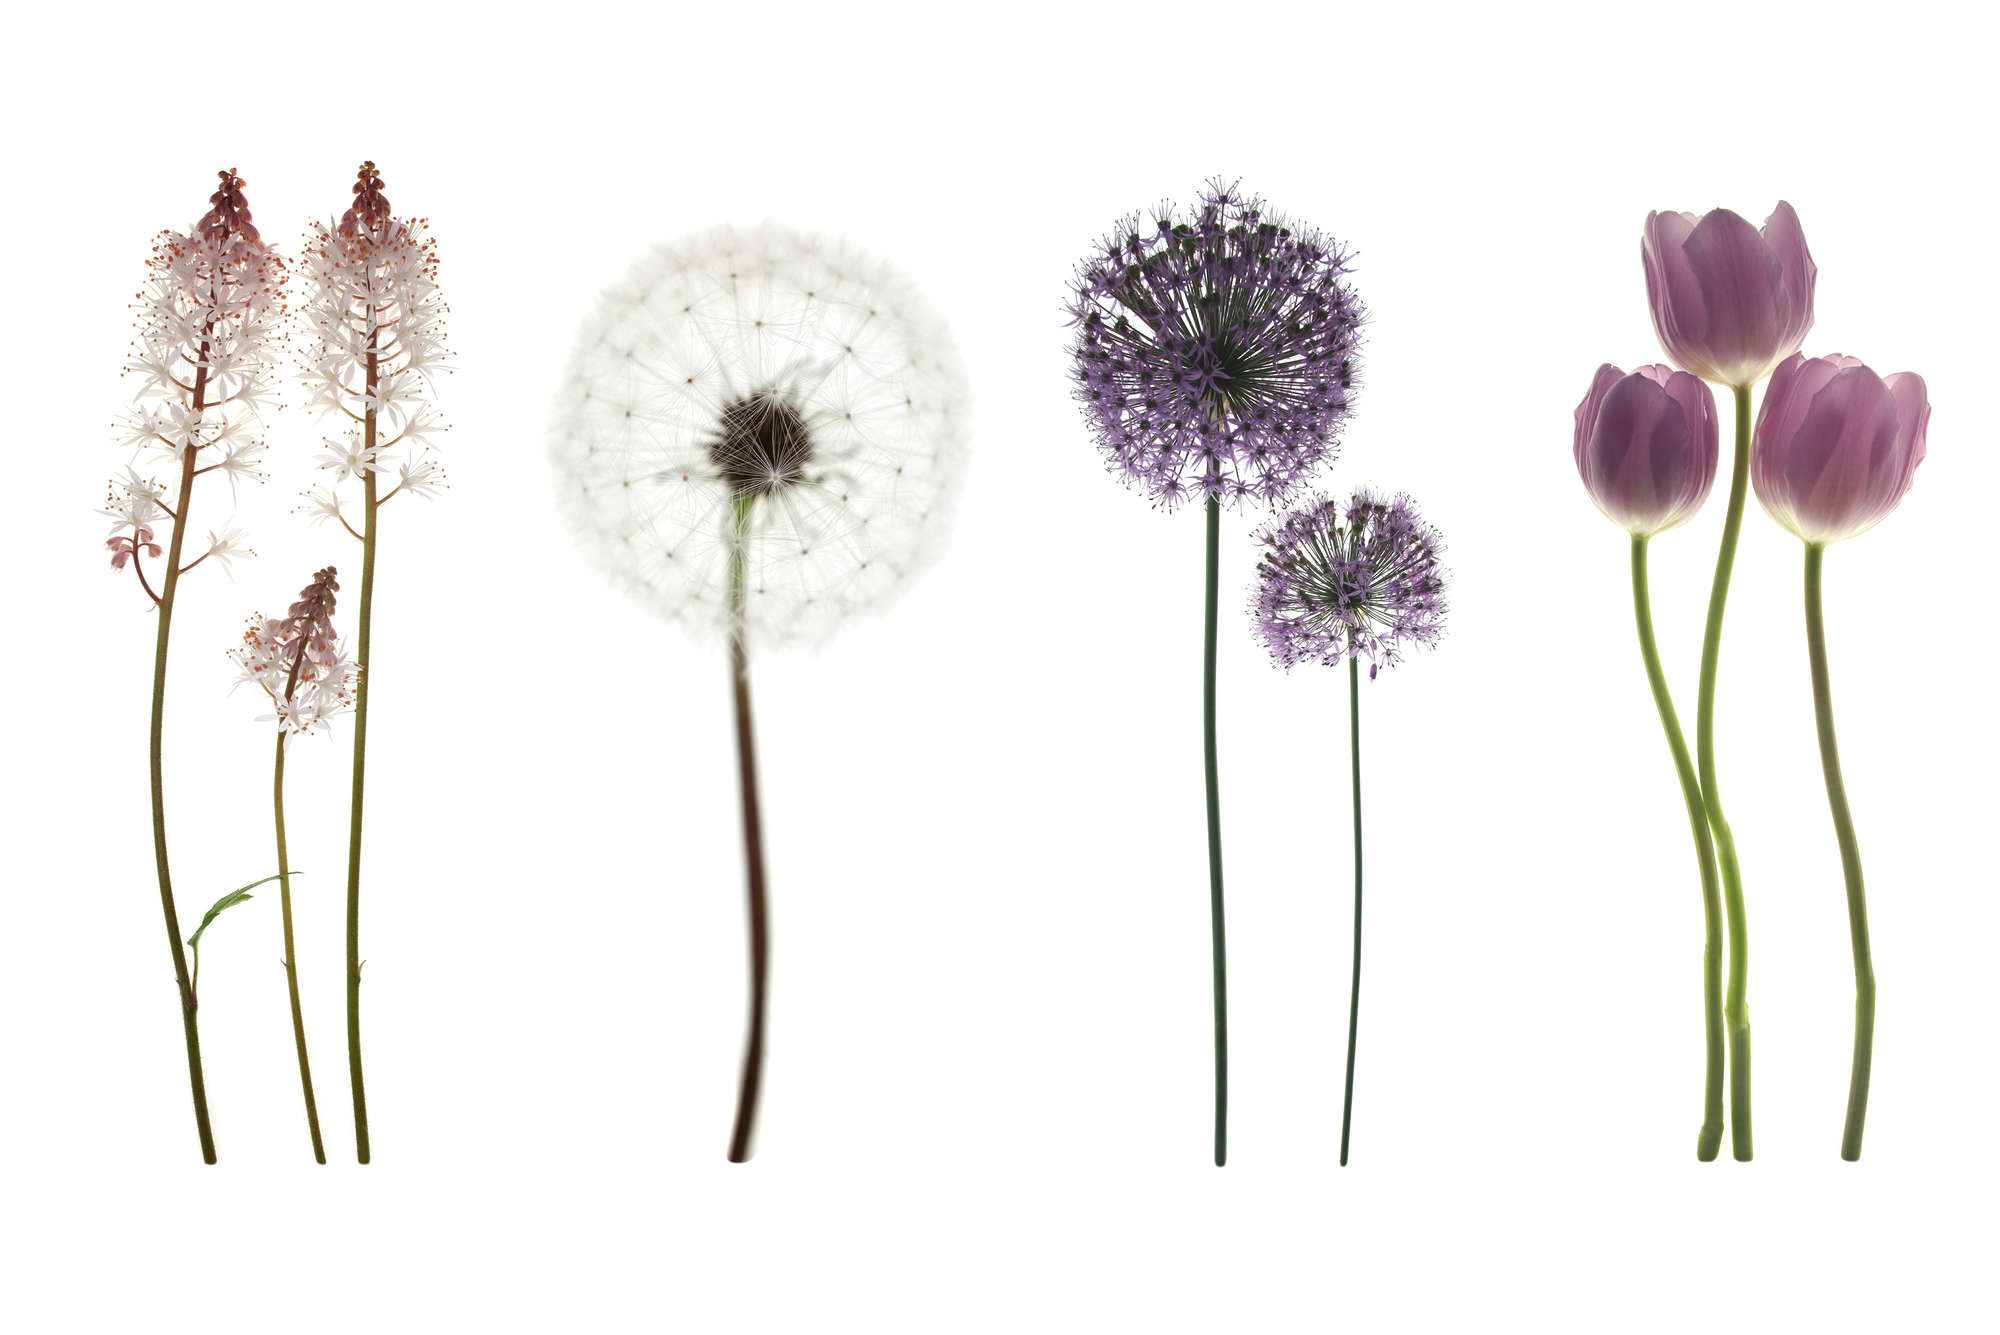             Digital behang met verschillende bloemen - parelmoer glad vlies
        